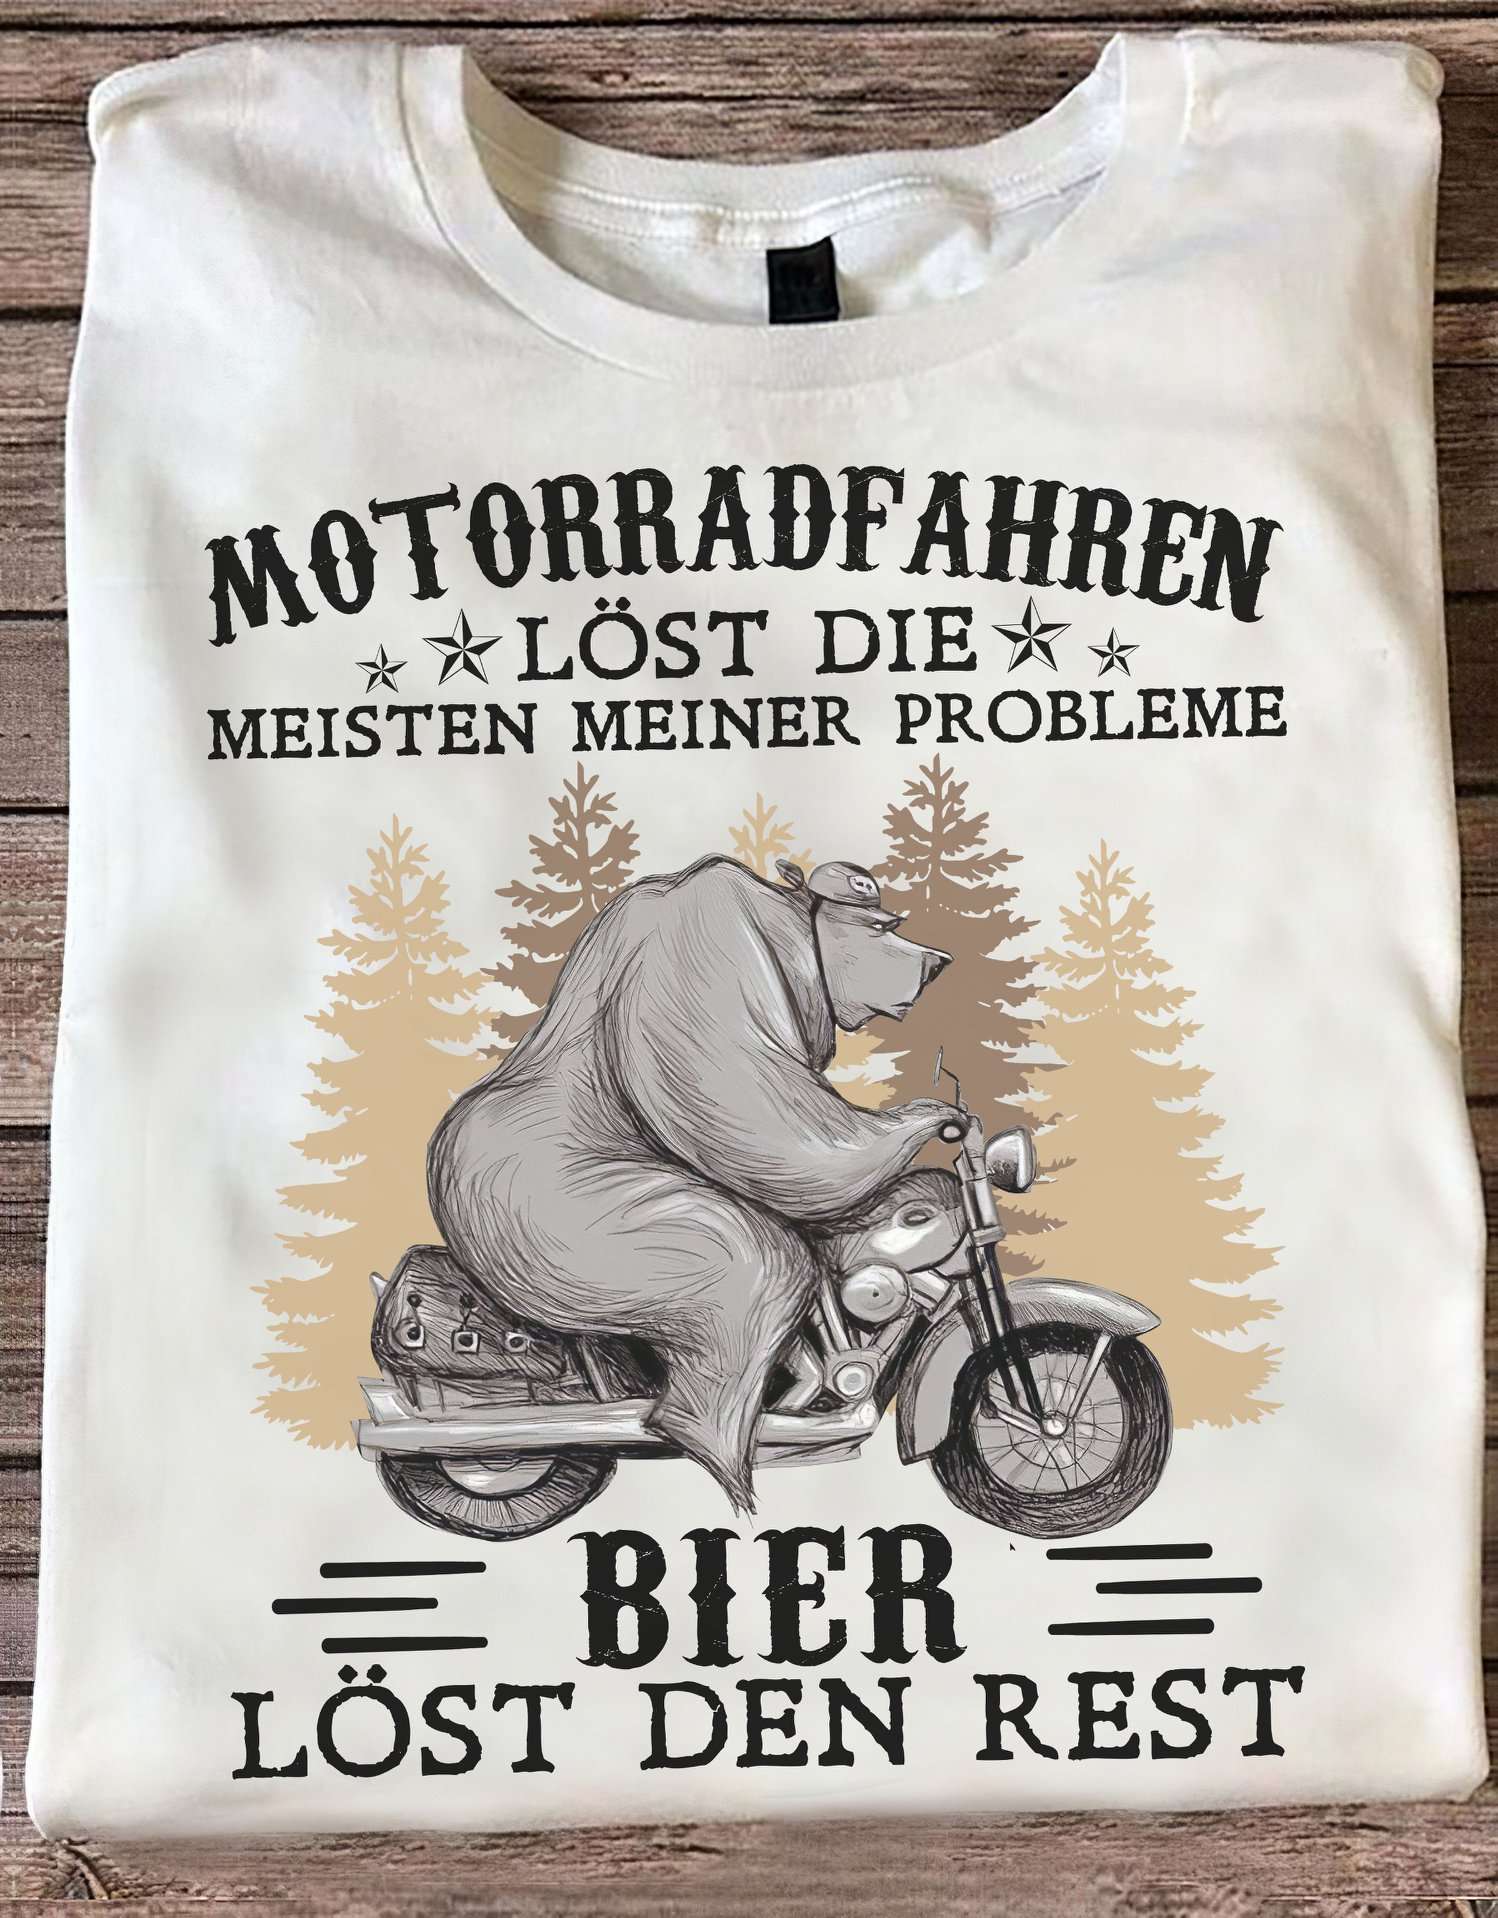 Motorradfahren lost die meisten meiner probleme, bier lost den rest - Beer and motorcycle, bear riding motorbike